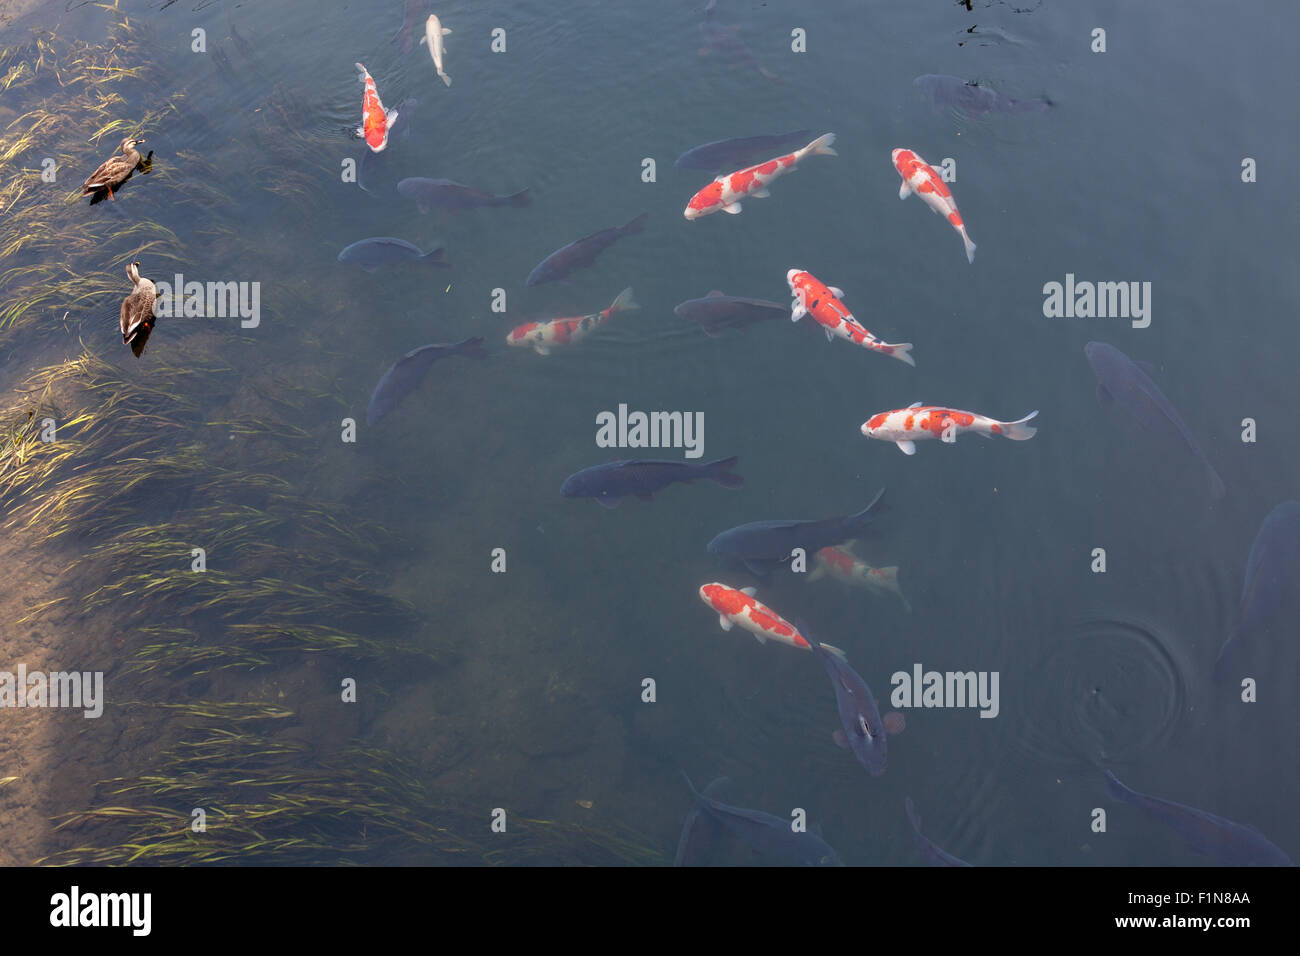 Nero Arancio e bianco coi pesci di fiume calmo con anatre Foto Stock